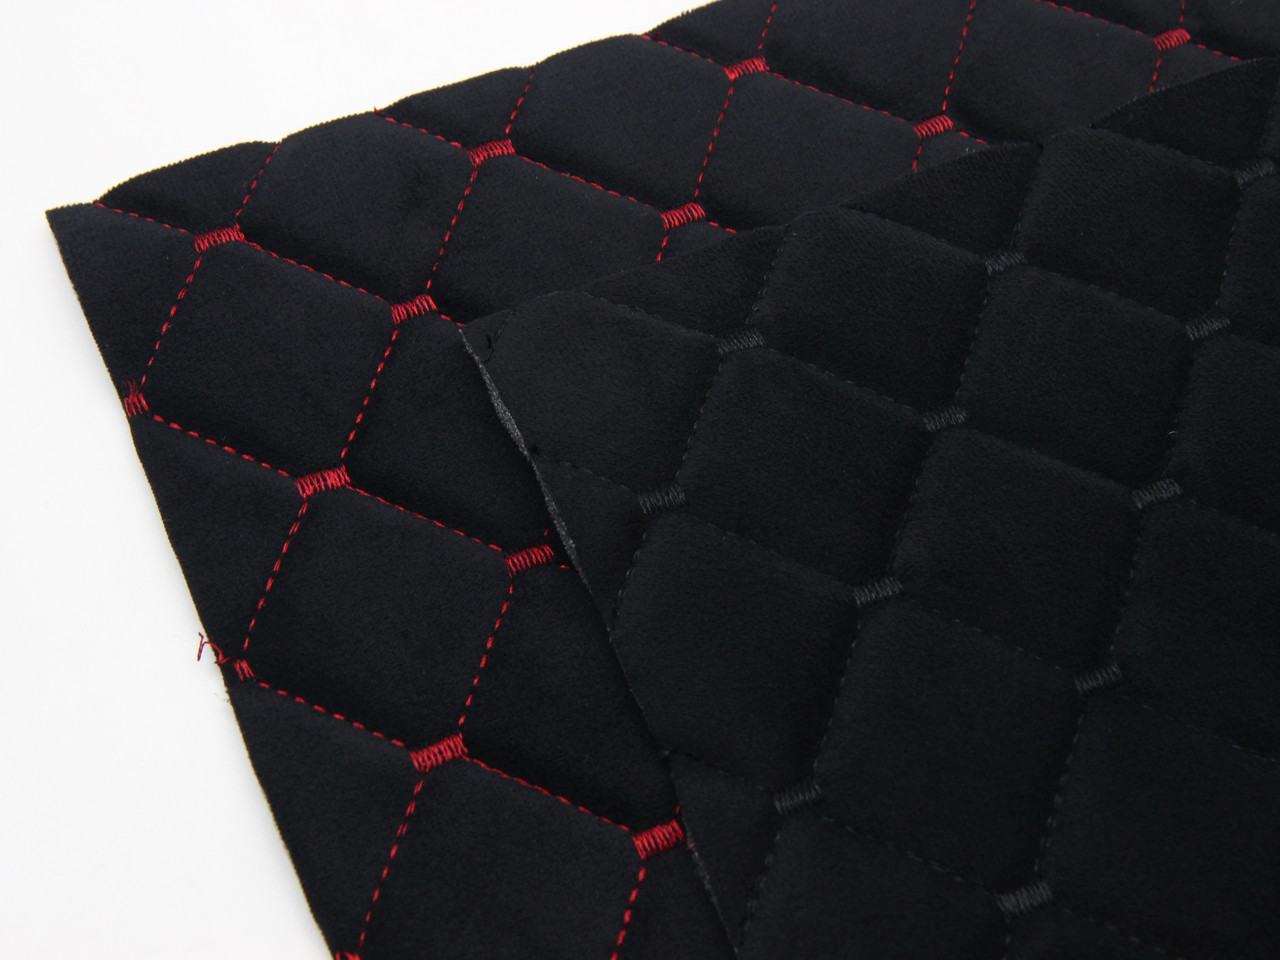 Велюр TRINITY стеганый черный «Ромб» (прошитый красной нитью) поролон 5мм, флизелин, ширина 1,35м детальная фотка